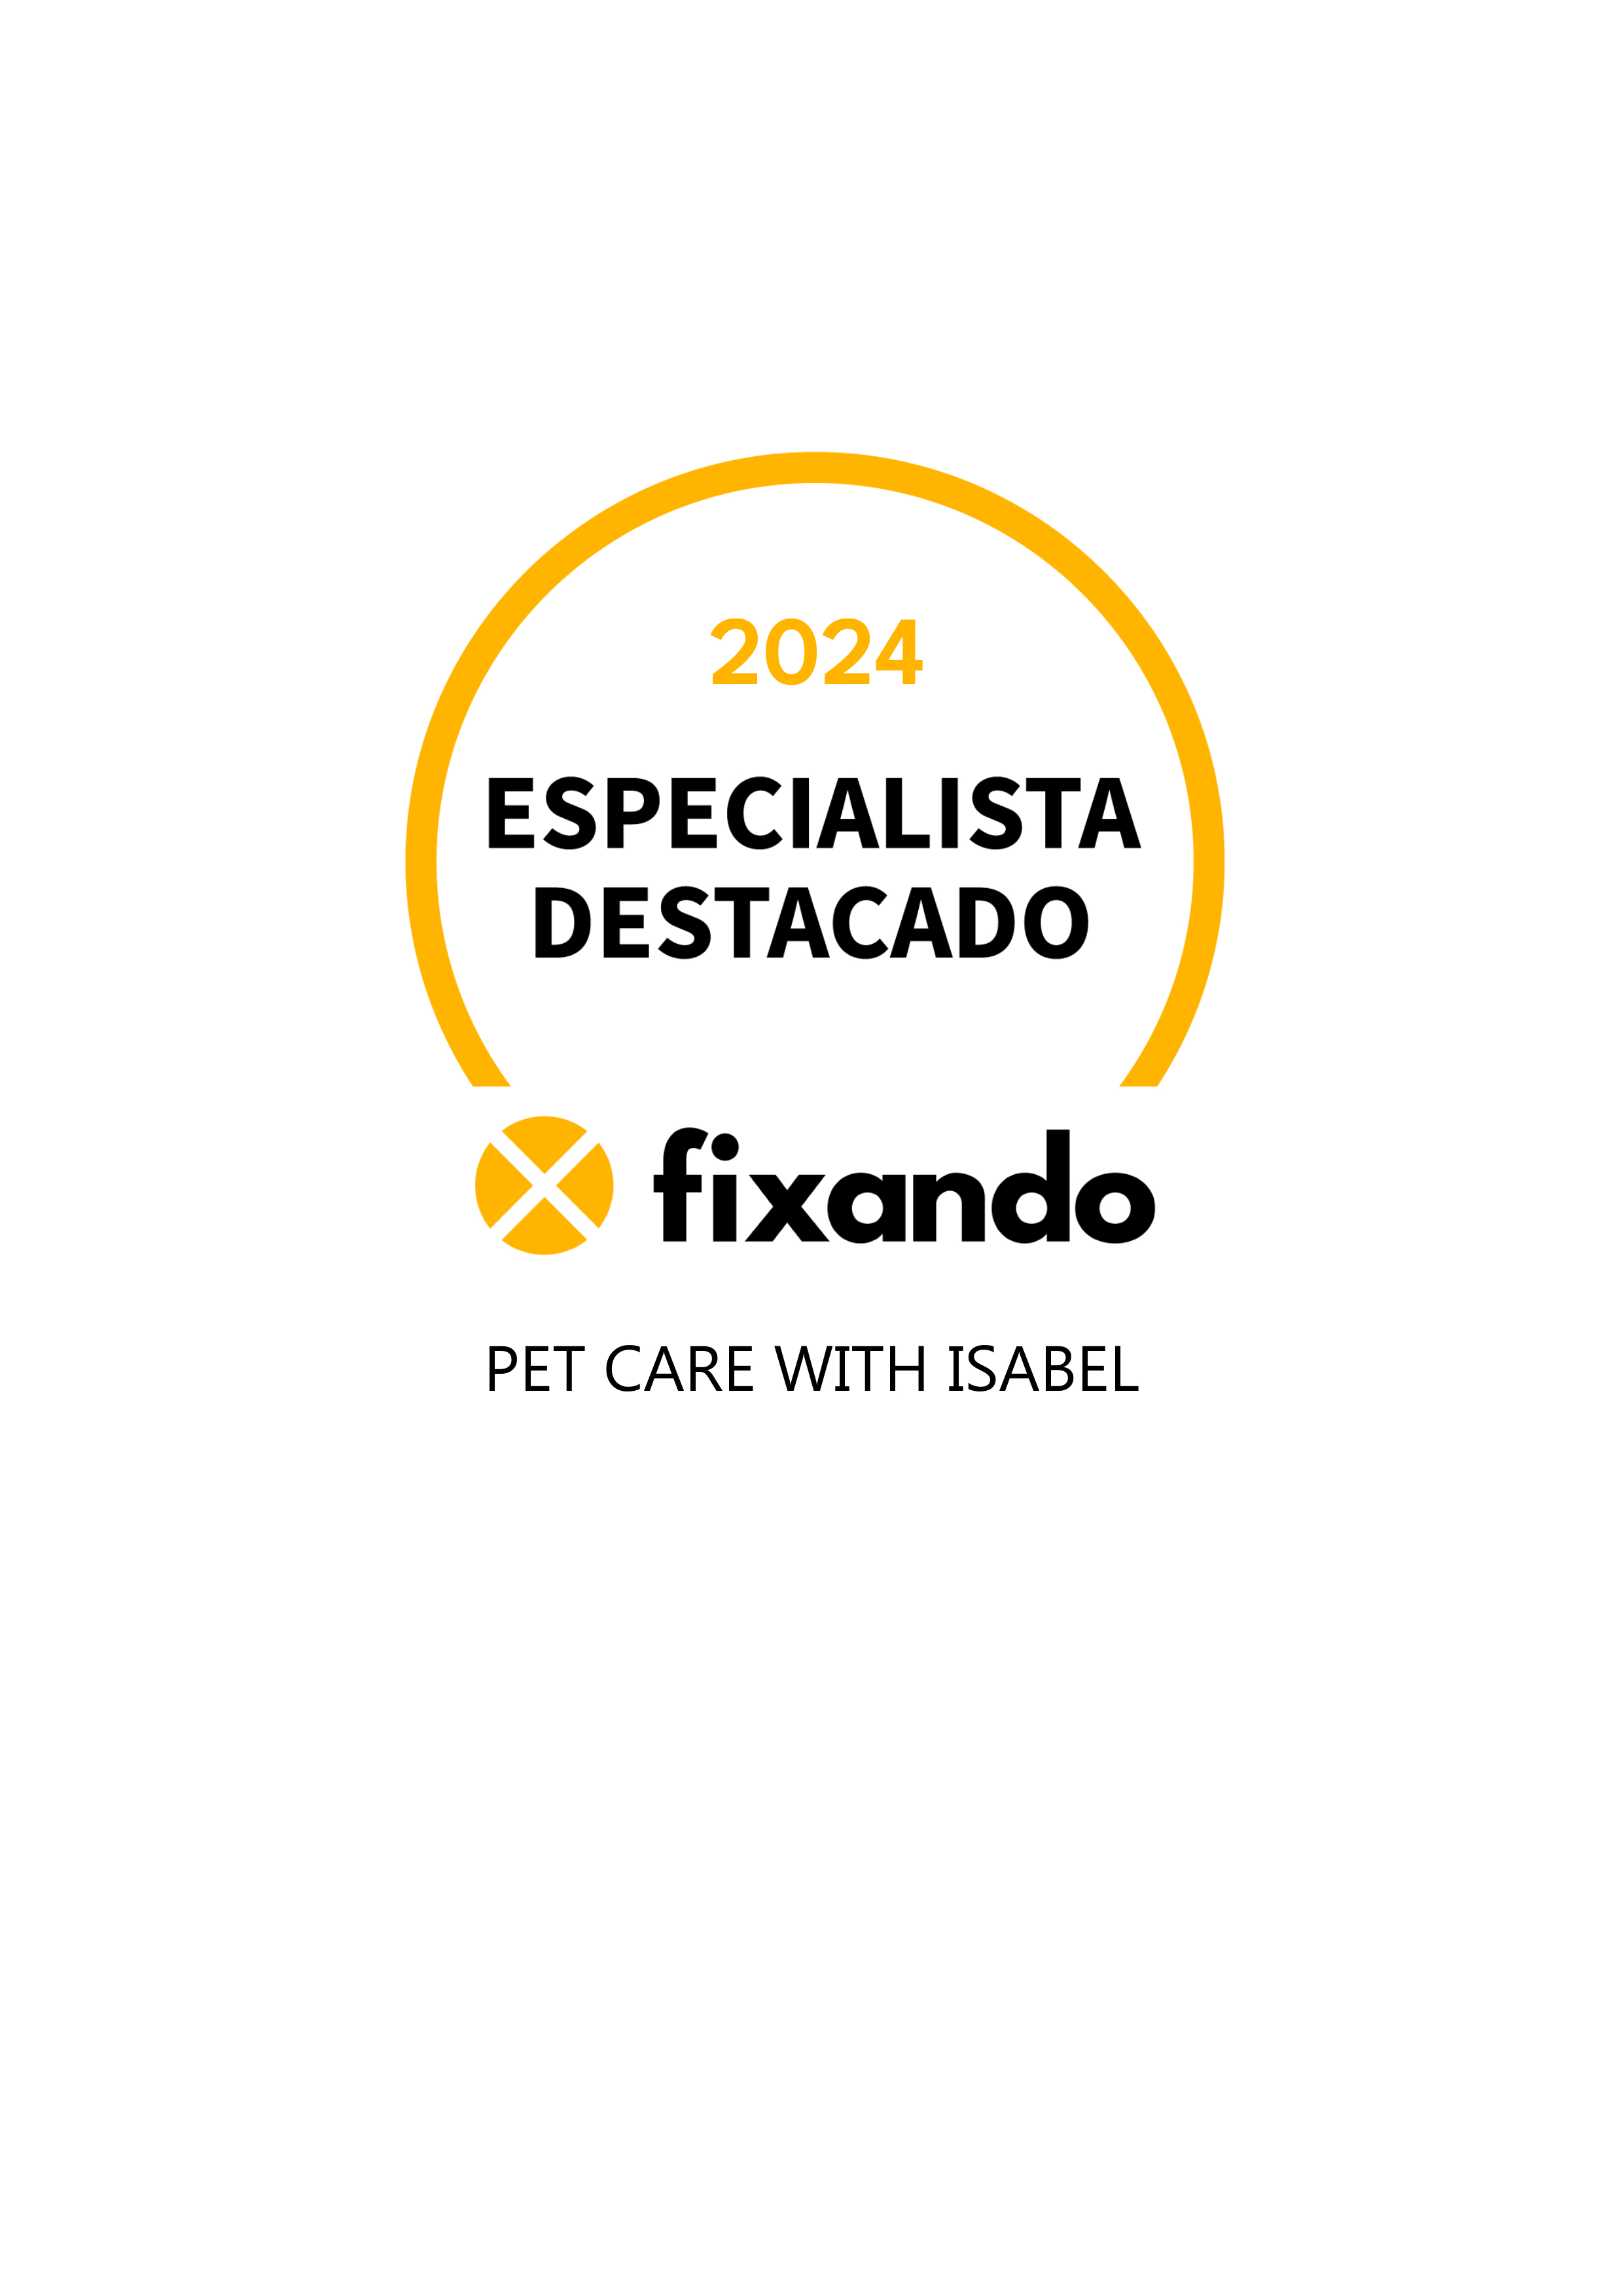 Pet Care with Isabel - Lisboa - House Sitting